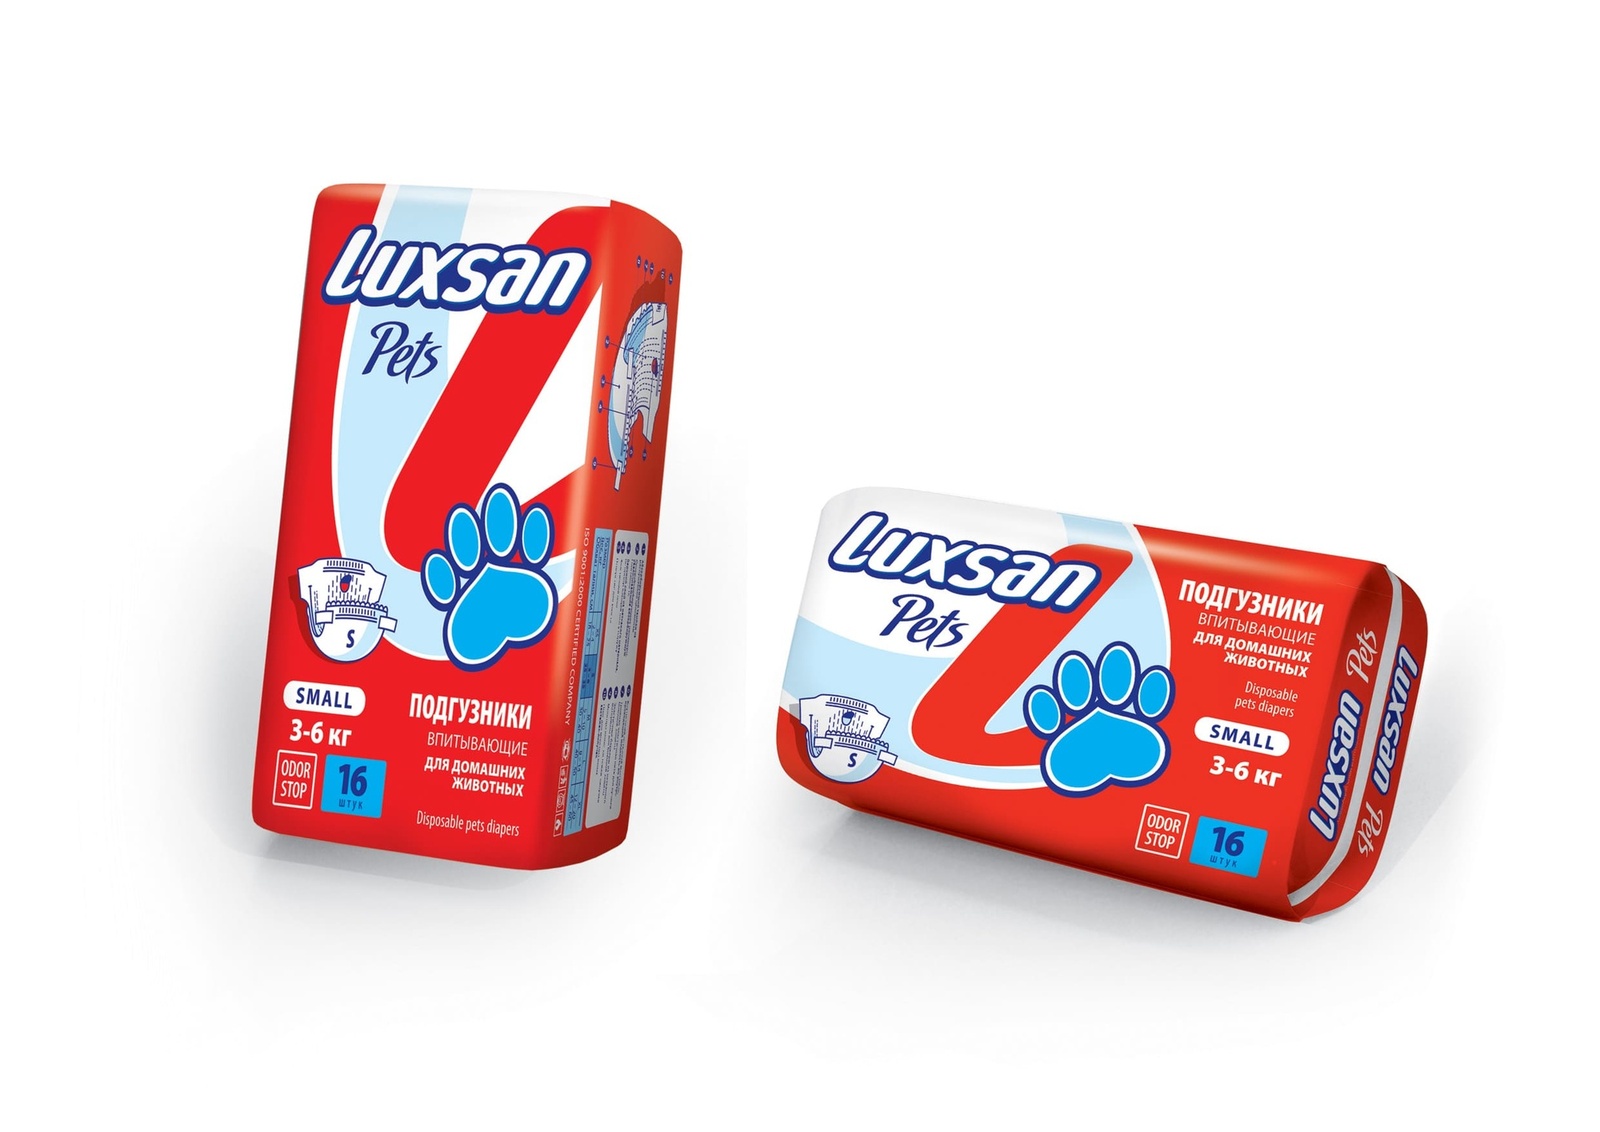 Luxsan подгузники для животных: 3-6 кг, 16 шт. (370 г)